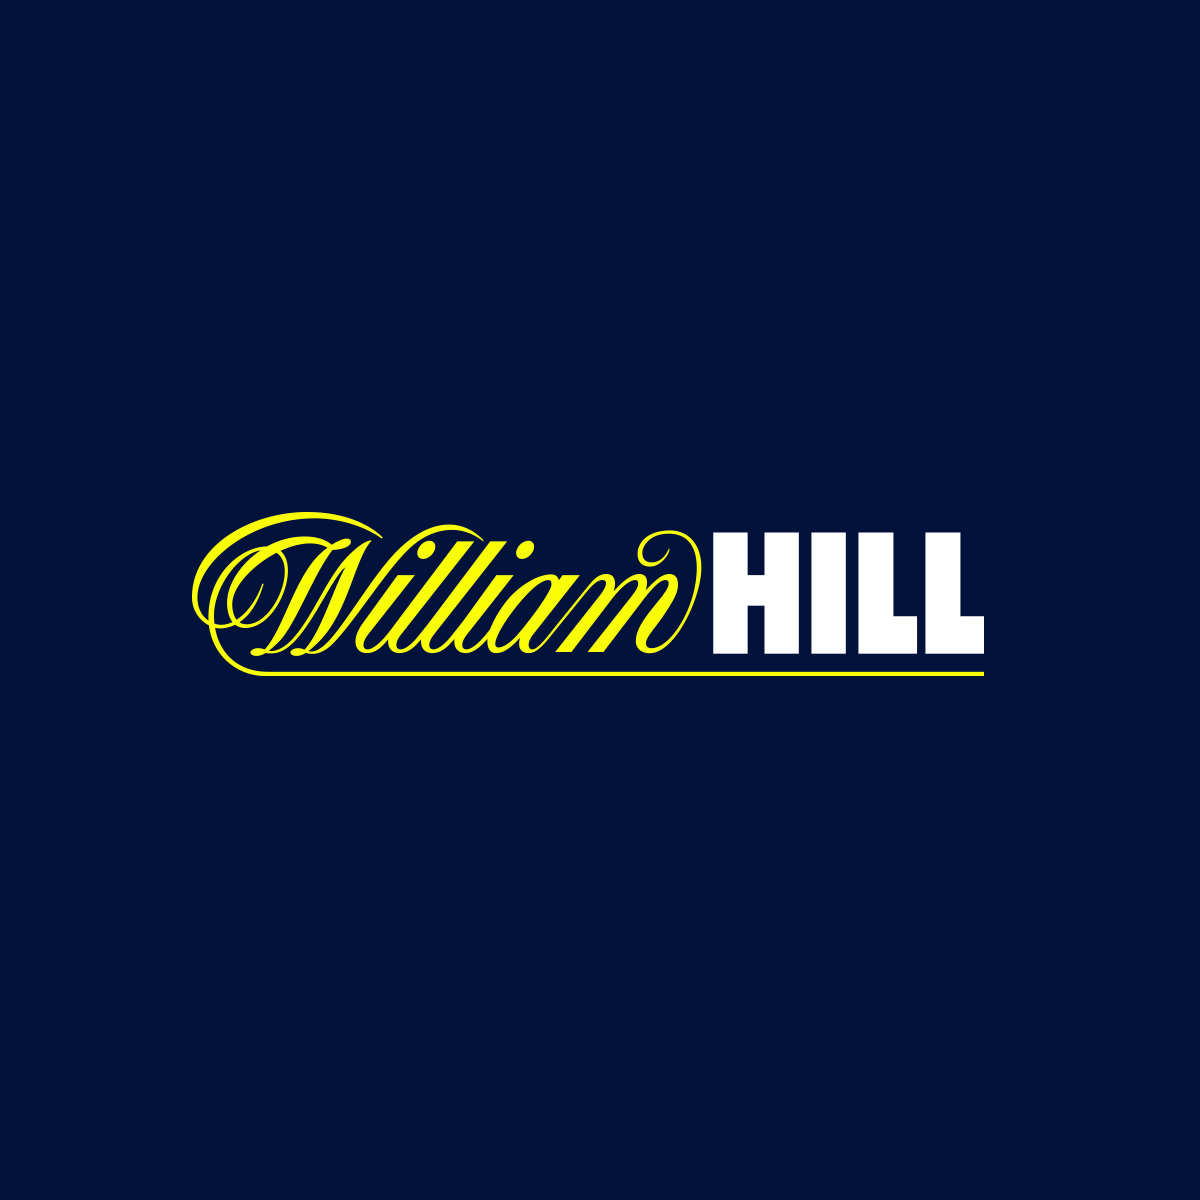 7. William hill